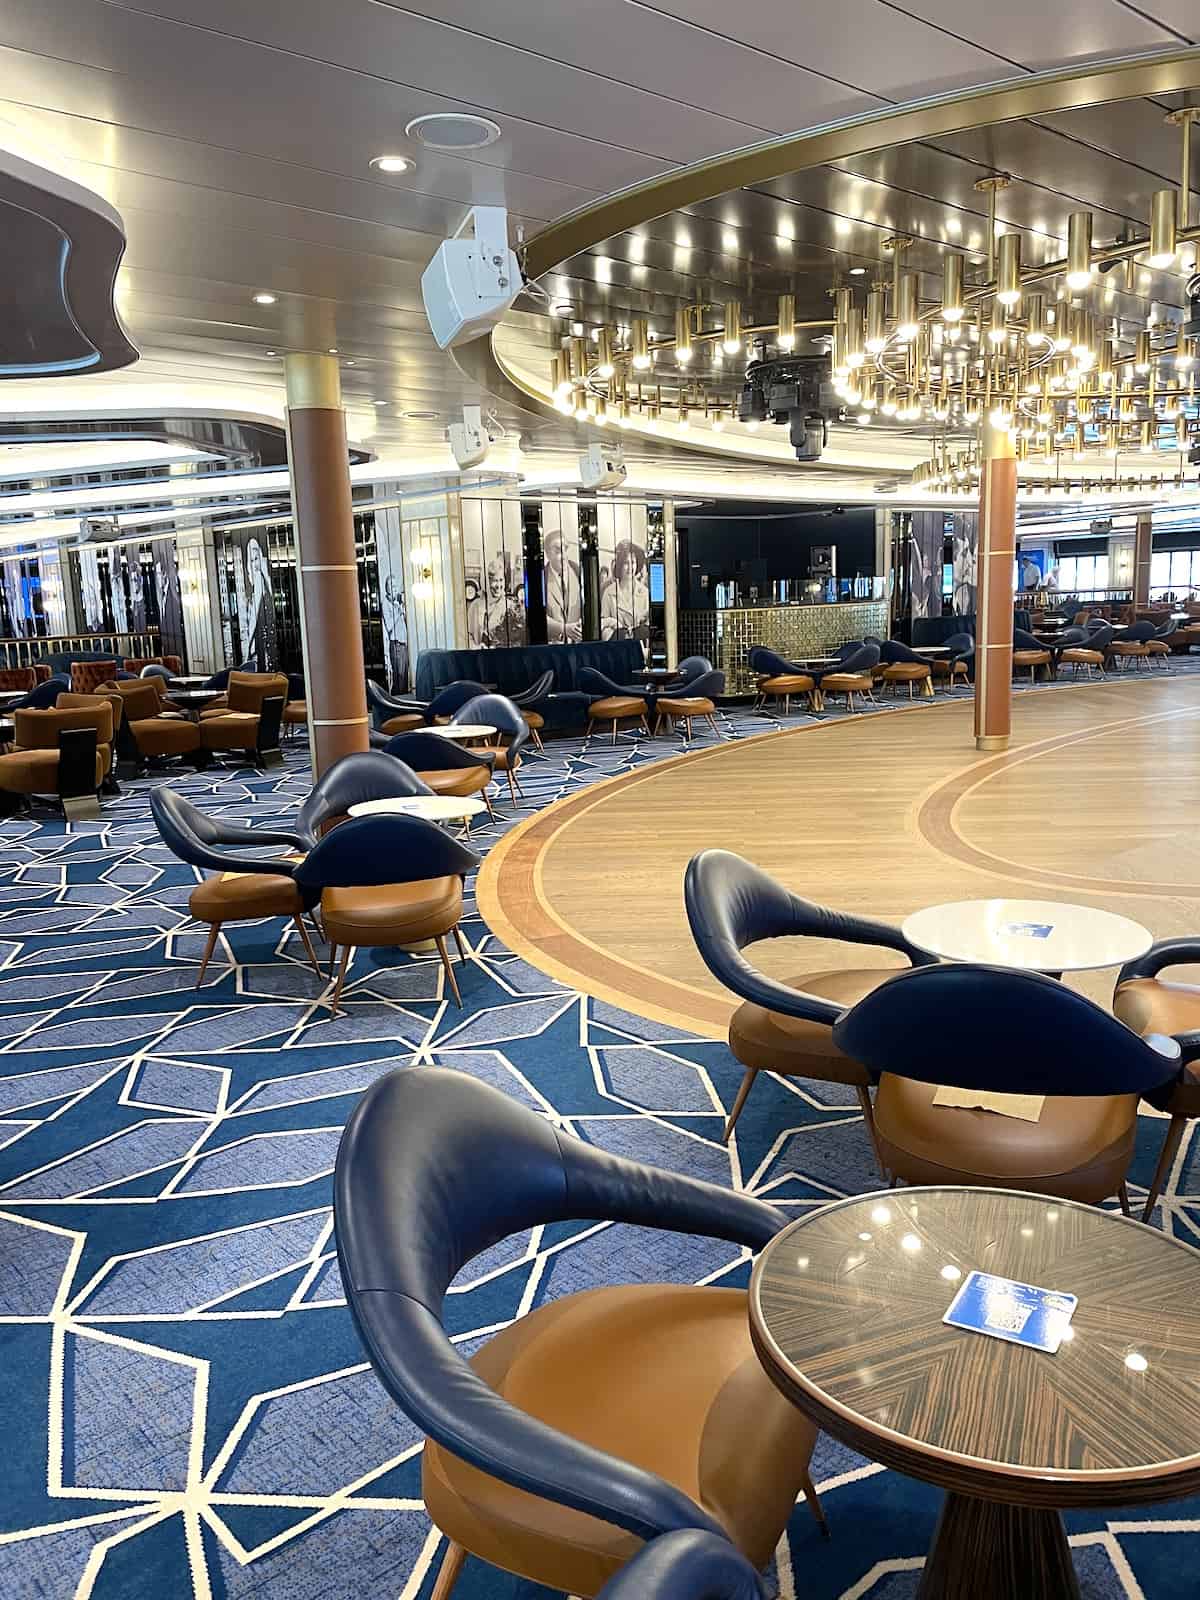 Lounge area on a cruise ship